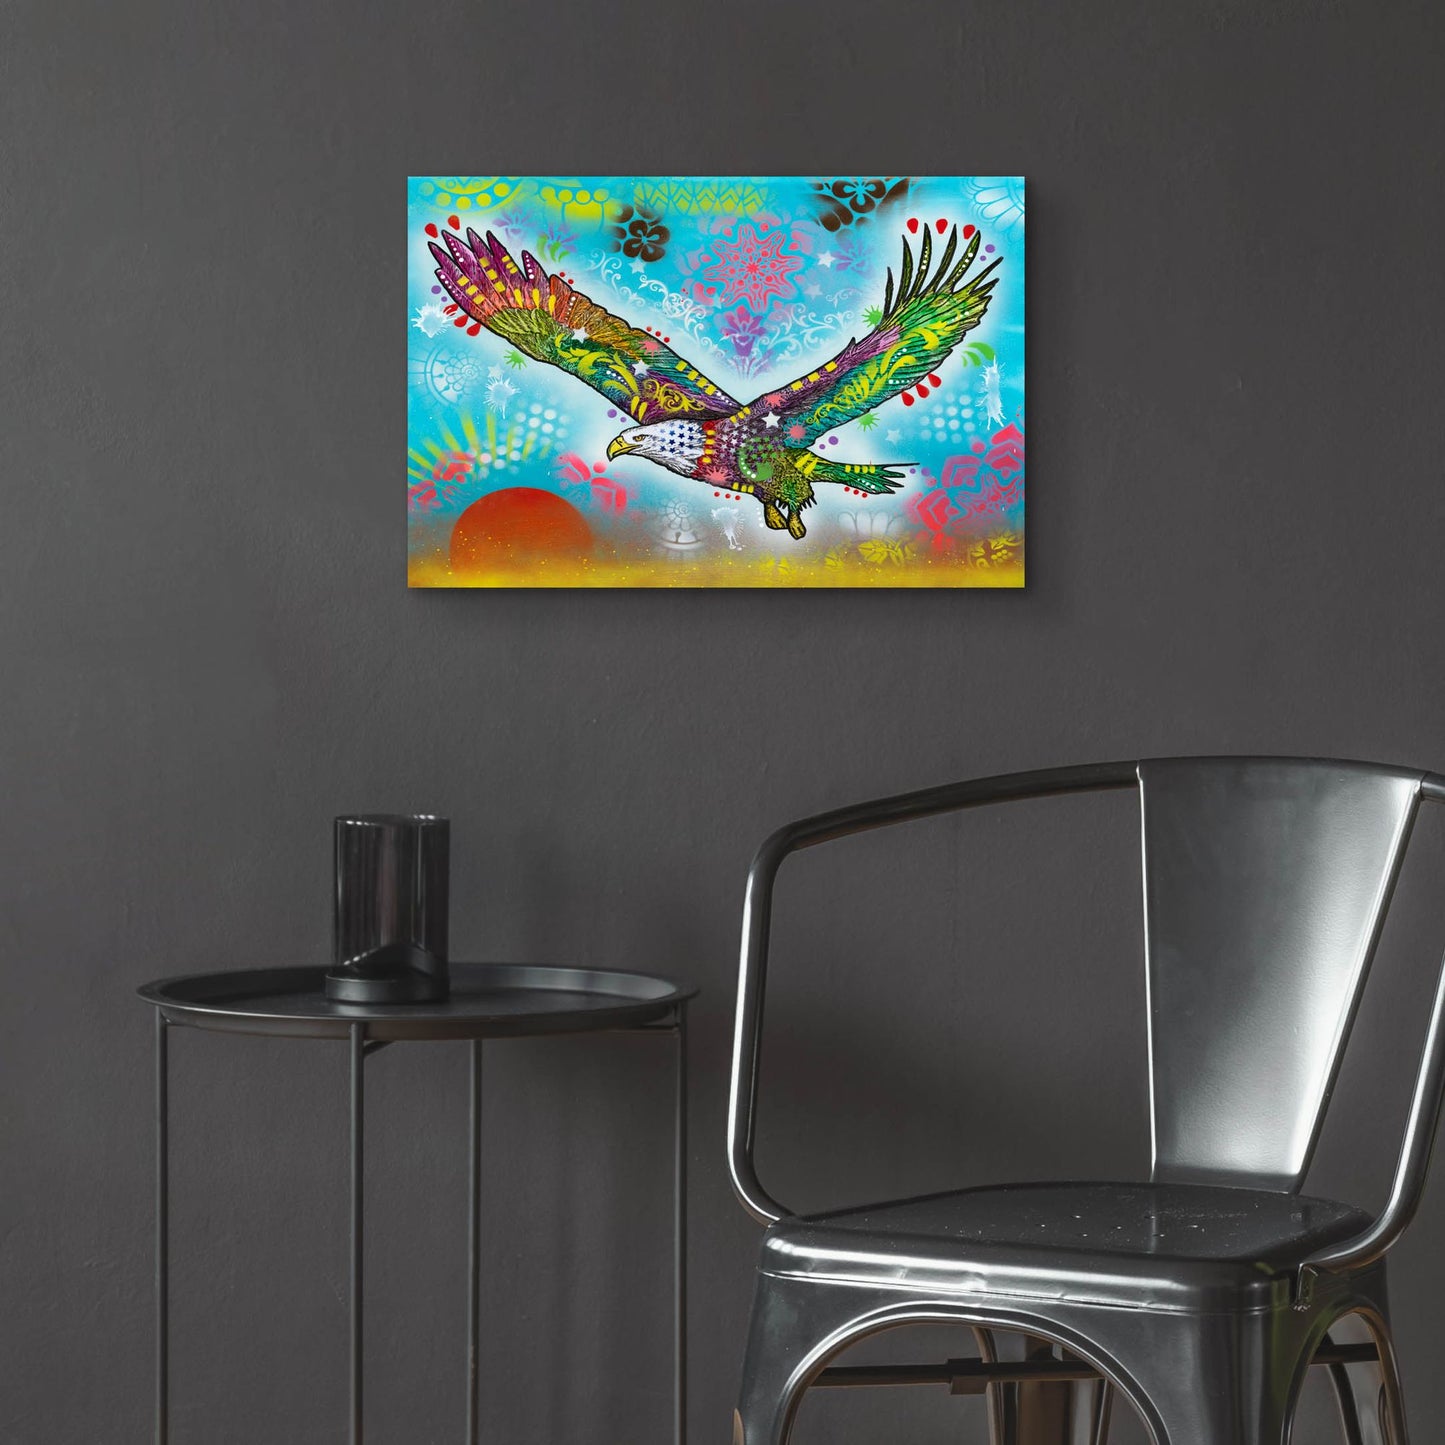 Epic Art 'In Flight' by Dean Russo, Acrylic Glass Wall Art,24x16